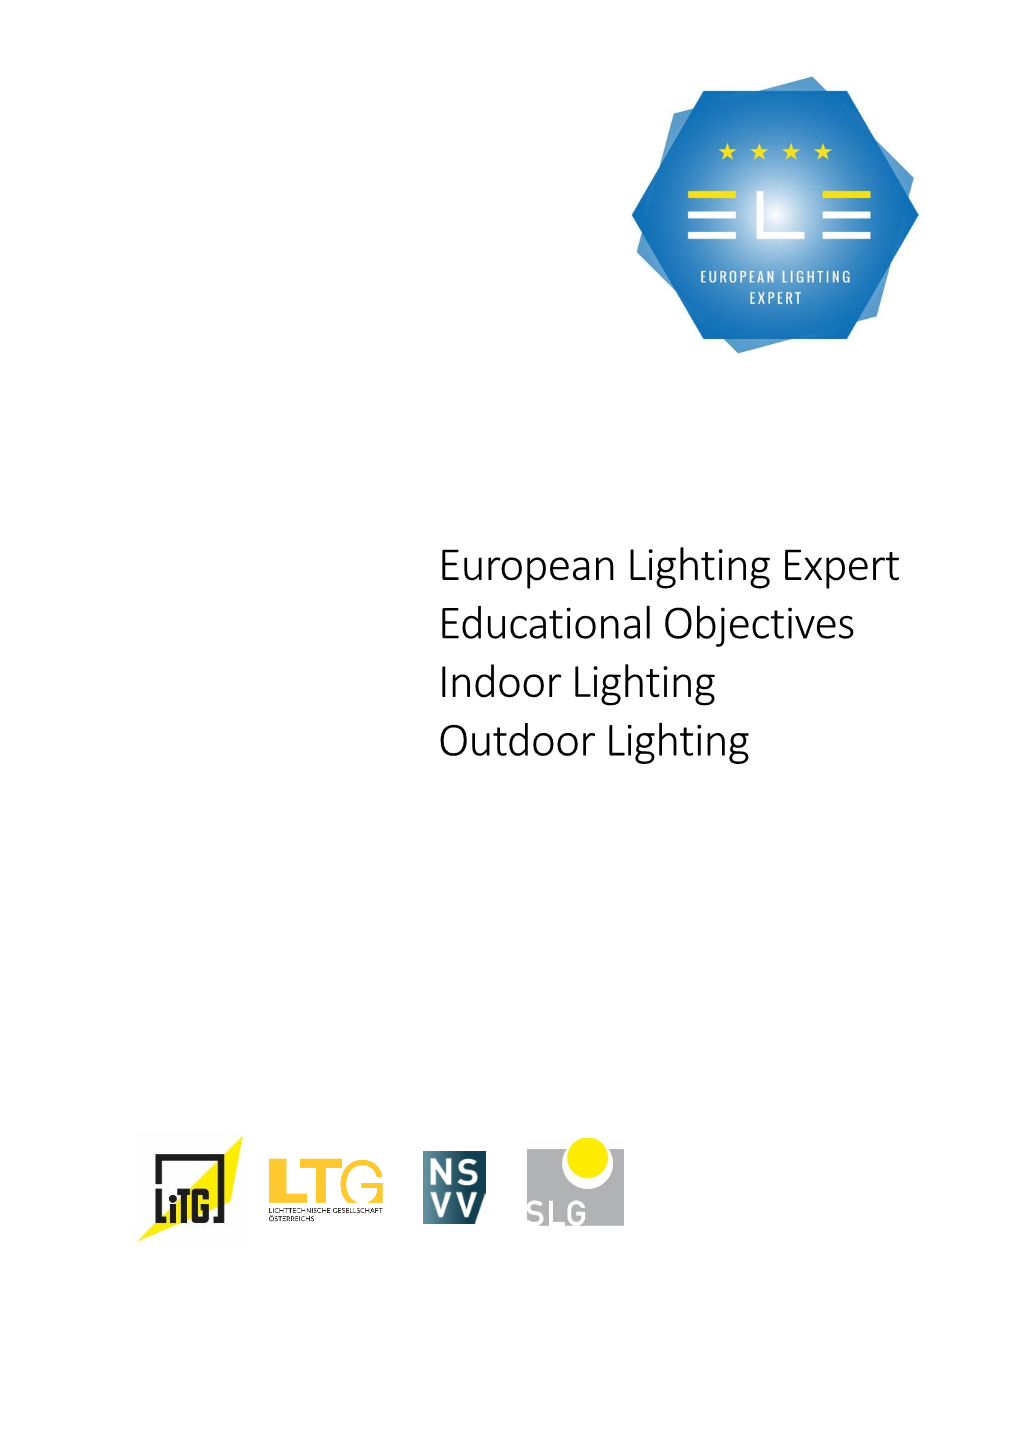 European Lighting Expert Educational Objectives Indoor Lighting Outdoor Lighting